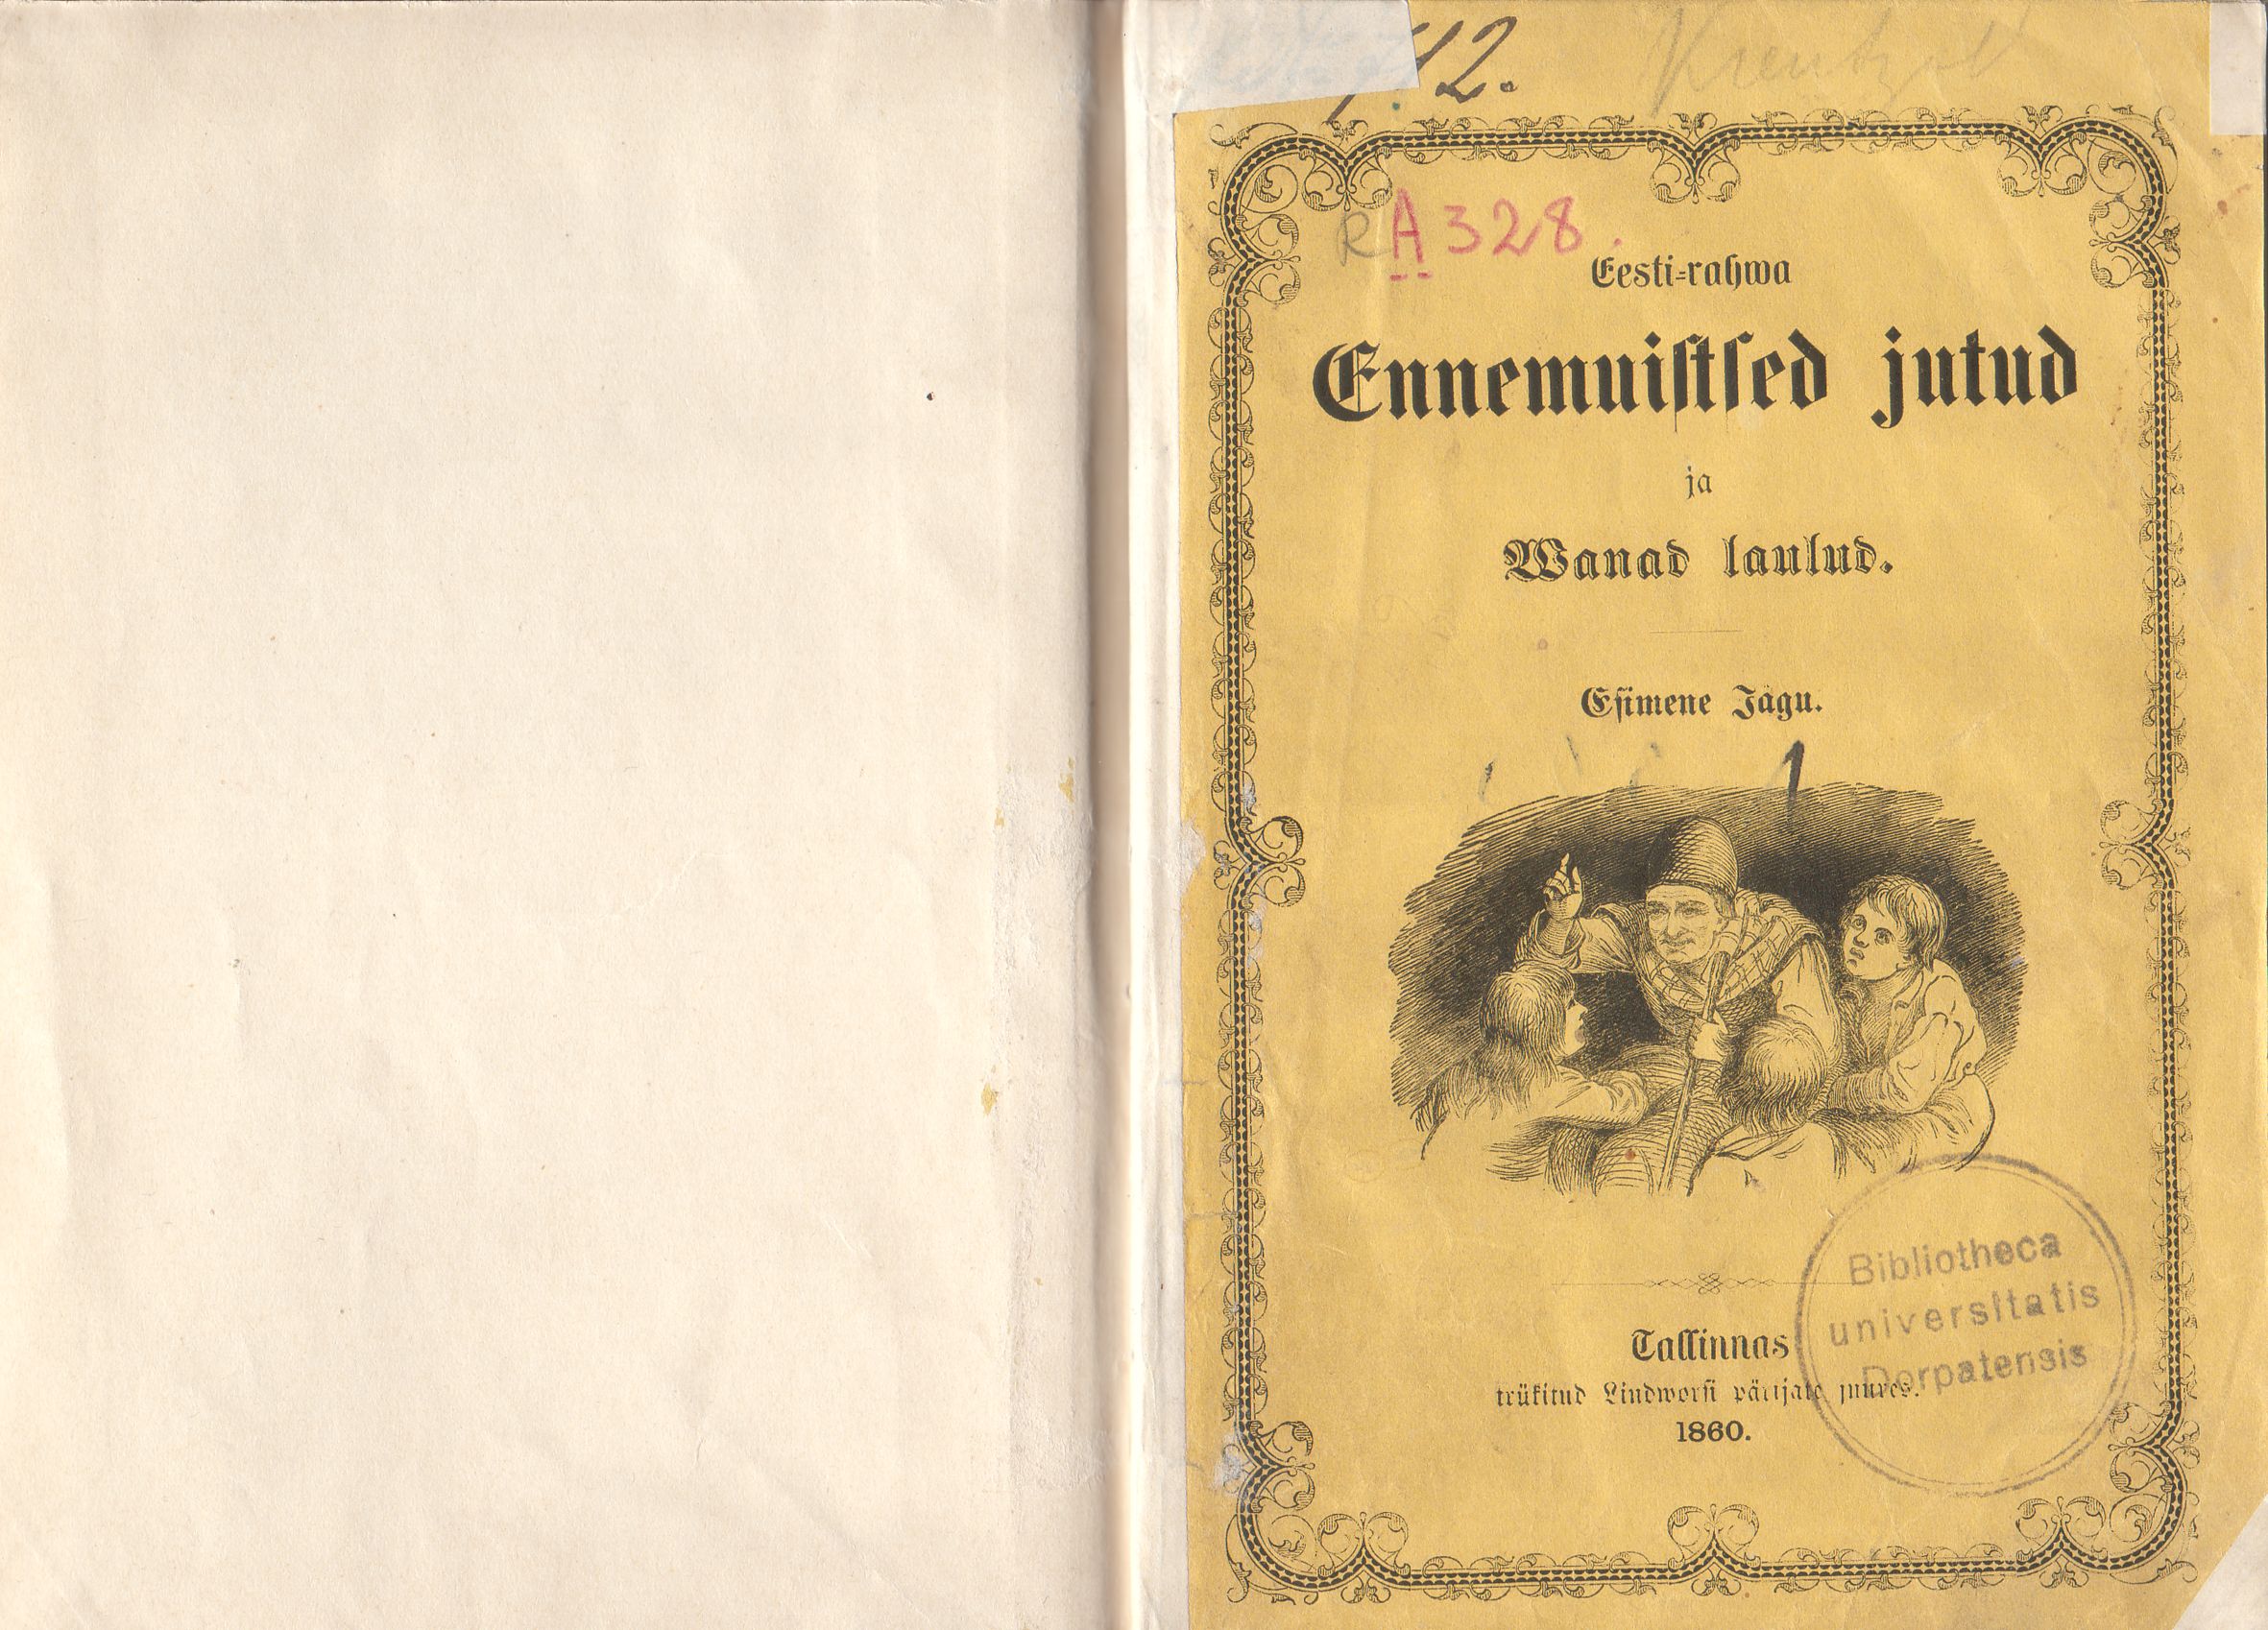 Eesti-rahwa Ennemuistsed jutud ja wanad laulud [1] (1860) | 2. Передняя обложка